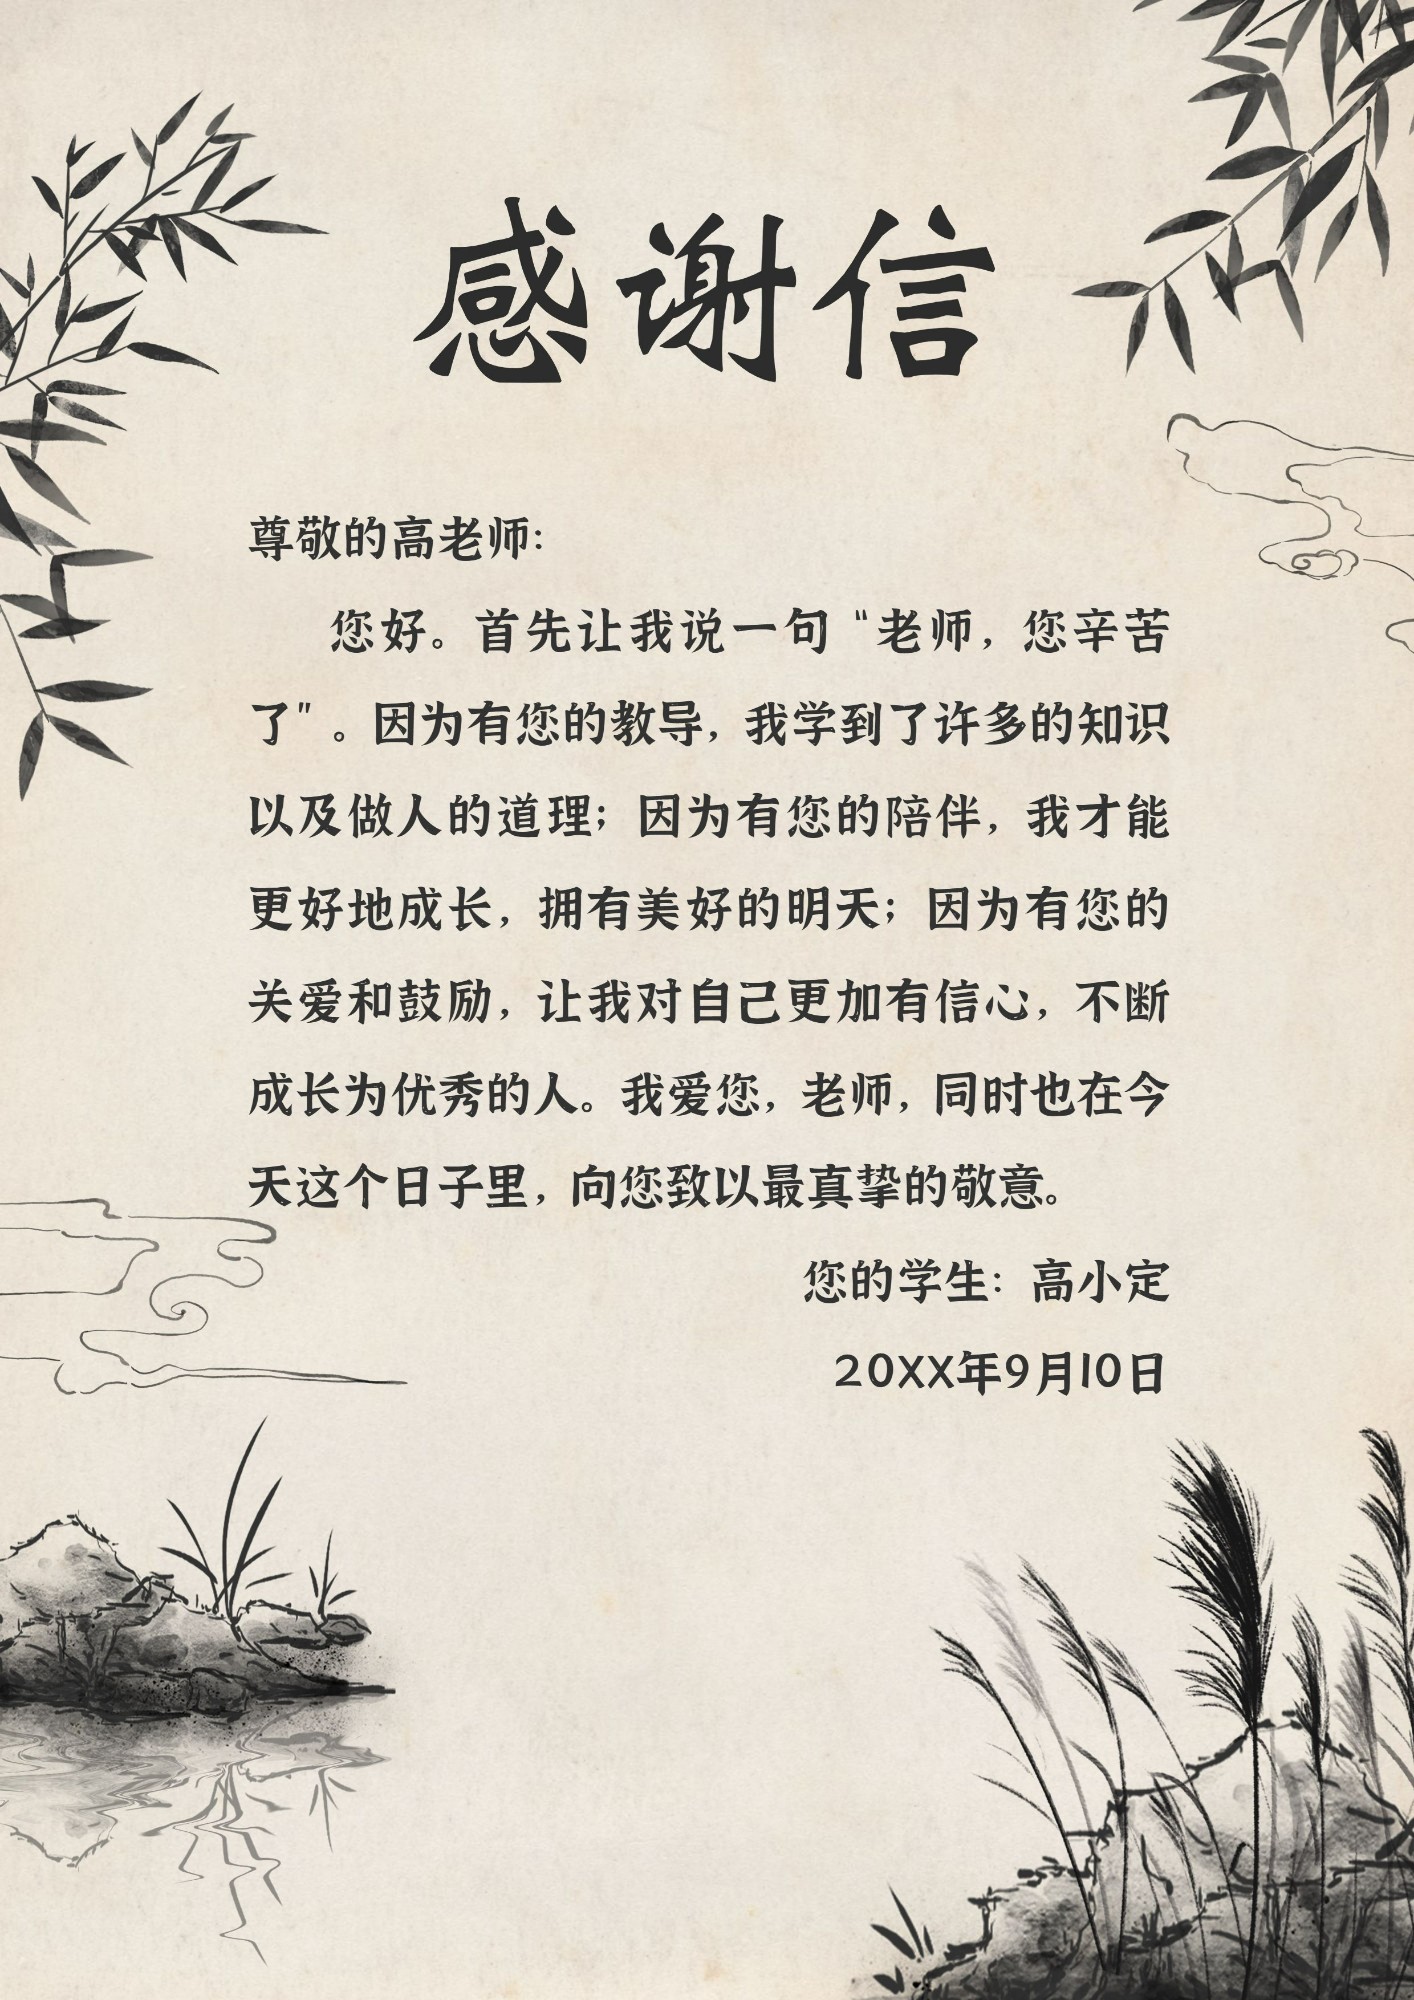 教师节感谢信中国风信纸